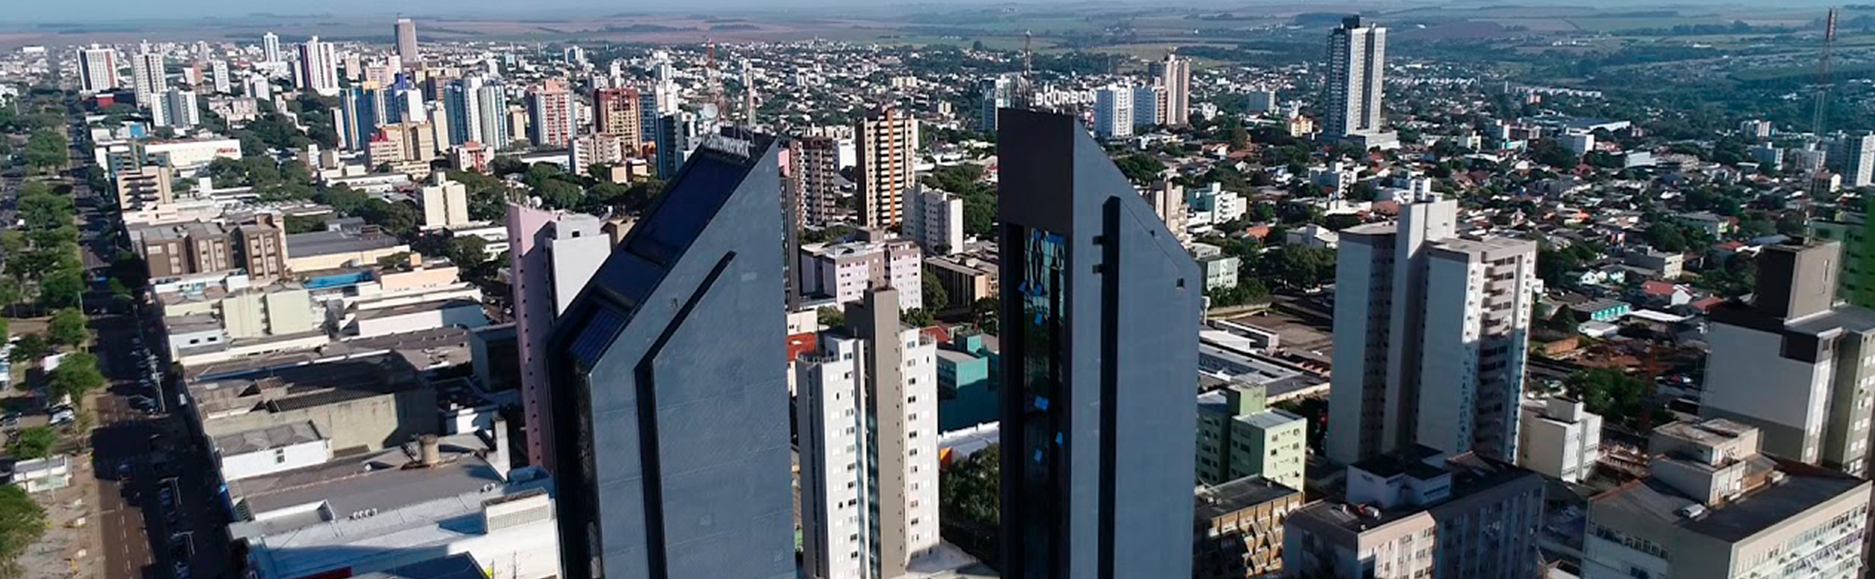 Prefeitura de Cascavel aumenta transparência e qualifica atendimento com tecnologia IPM